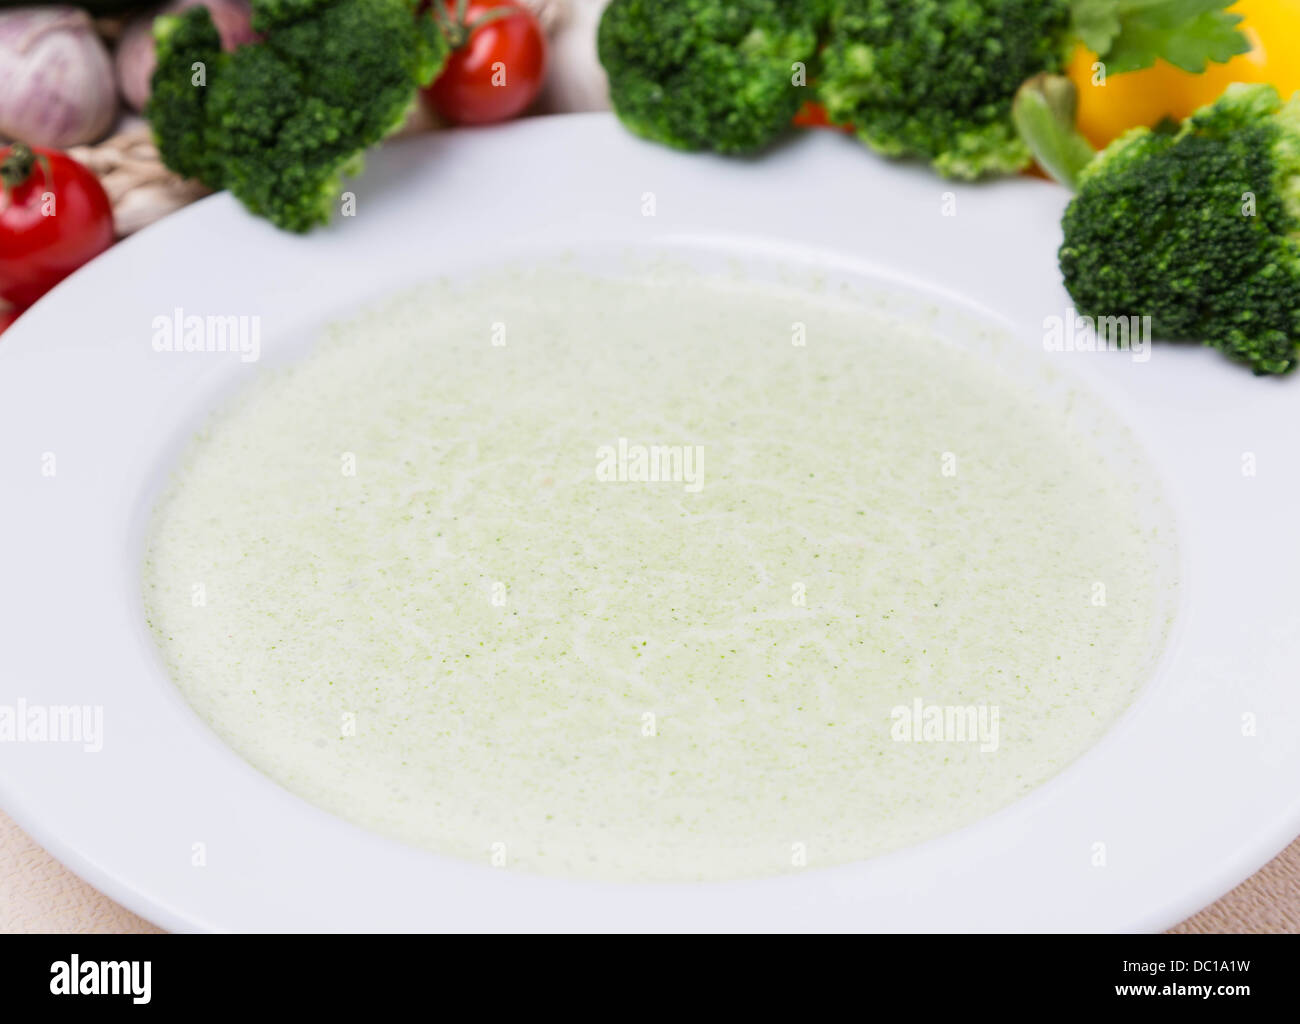 Rahmsuppe von Brokkoli mit Garnierung in weißer Teller Stockfotografie ...